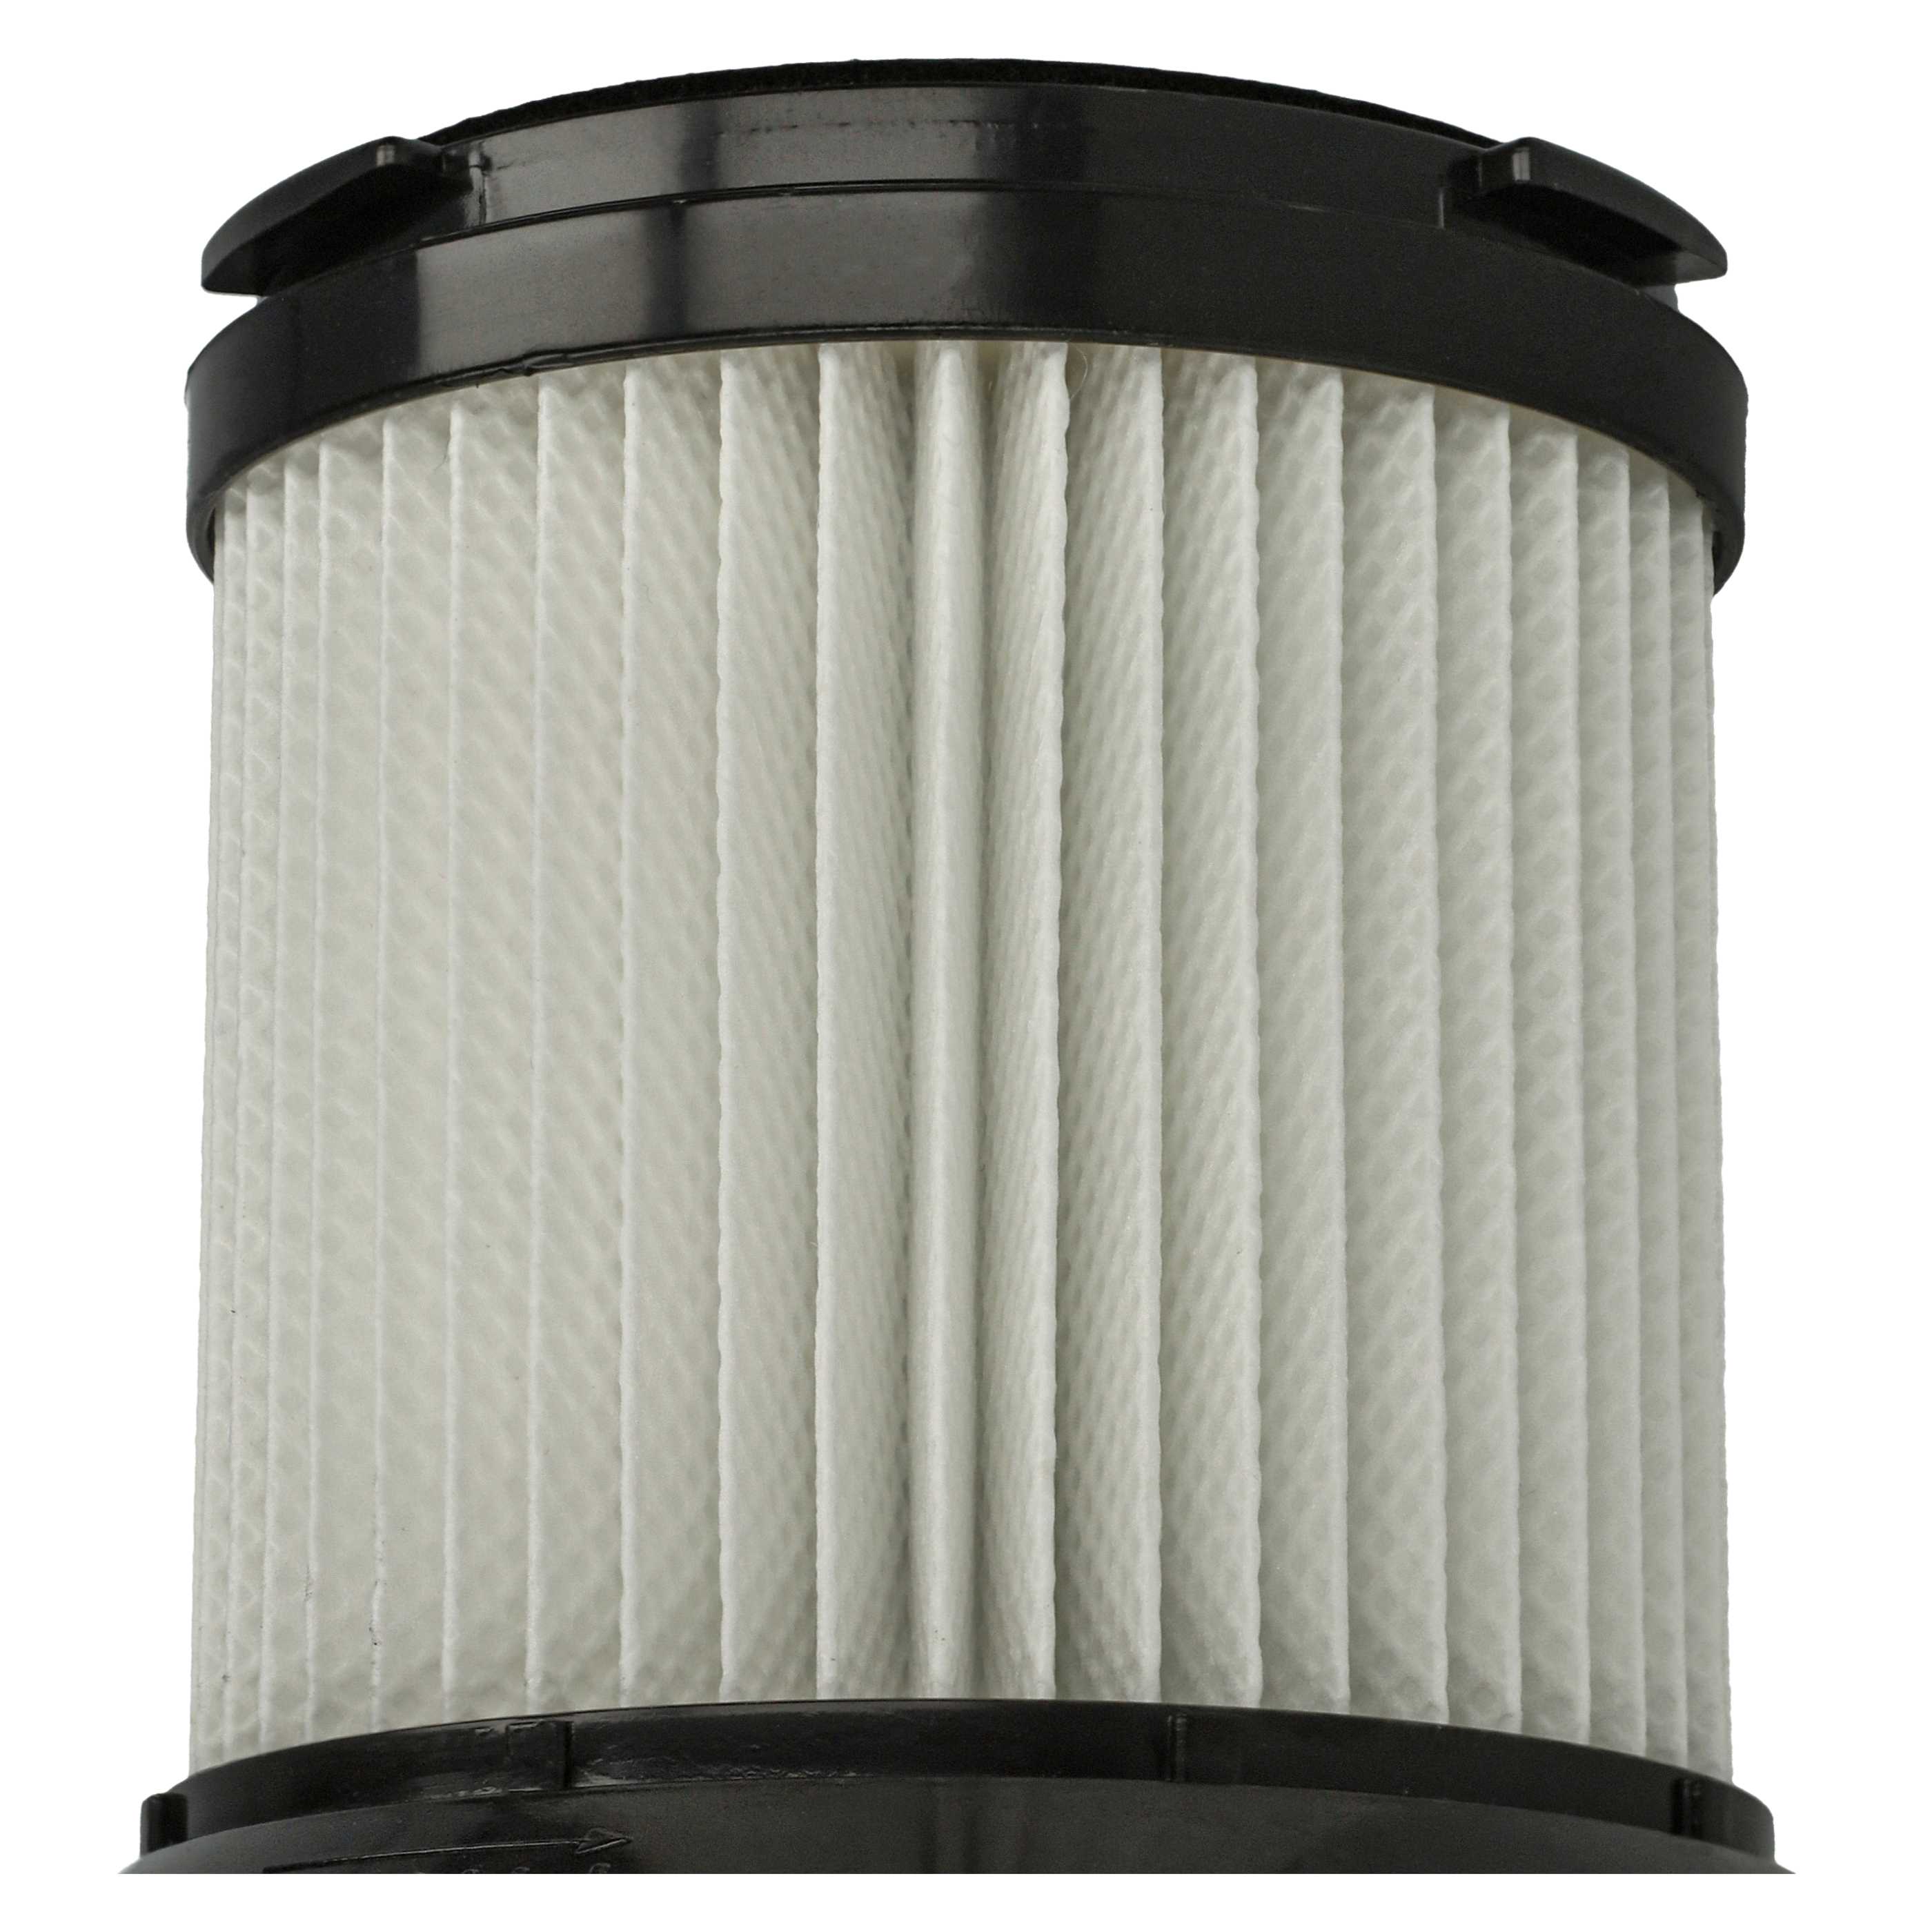 4x Filtro per aspirapolvere Sichler Zyklon BLS-200 - filtro HEPA, nero / bianco